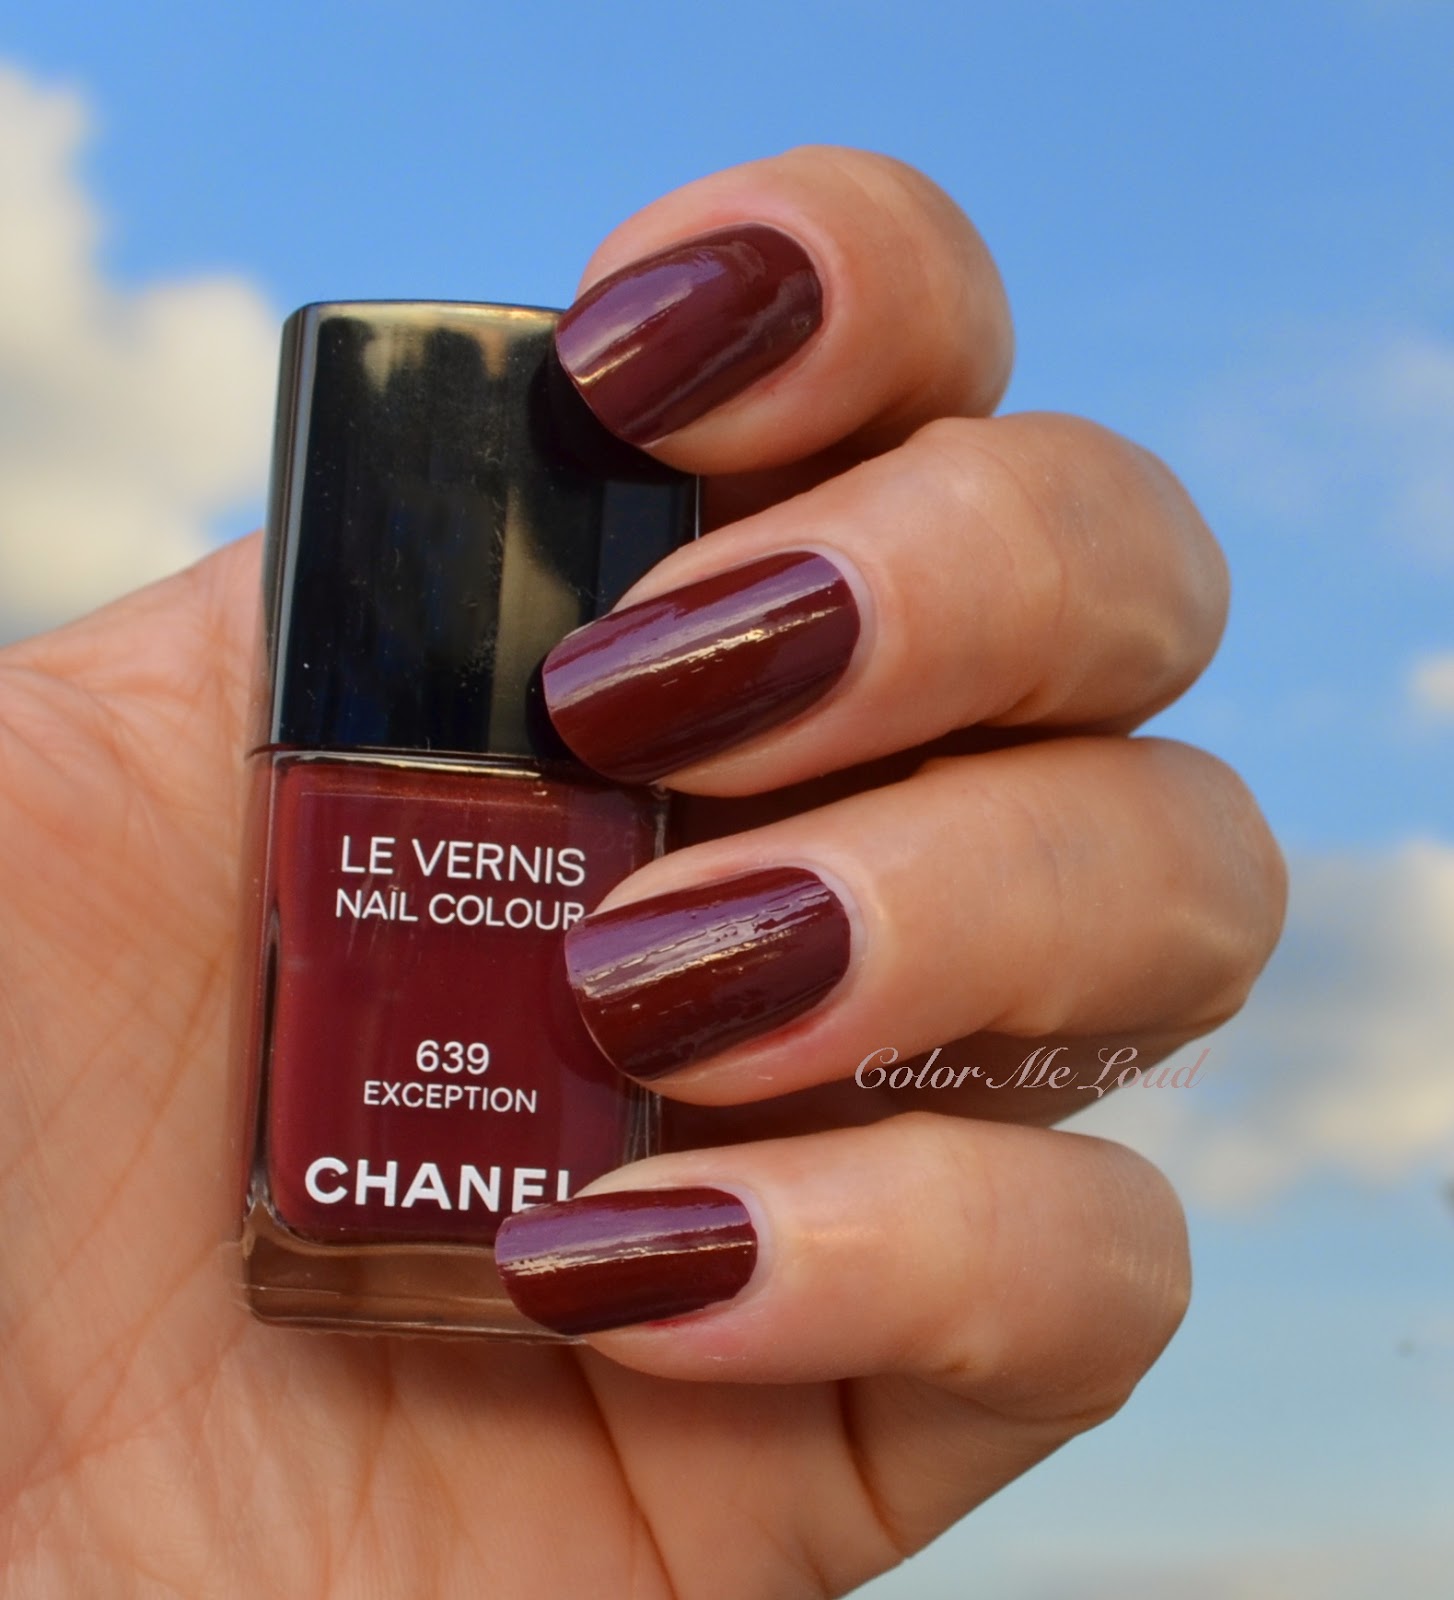 Chanel Le Vernis Nail Colour - 639 Exception